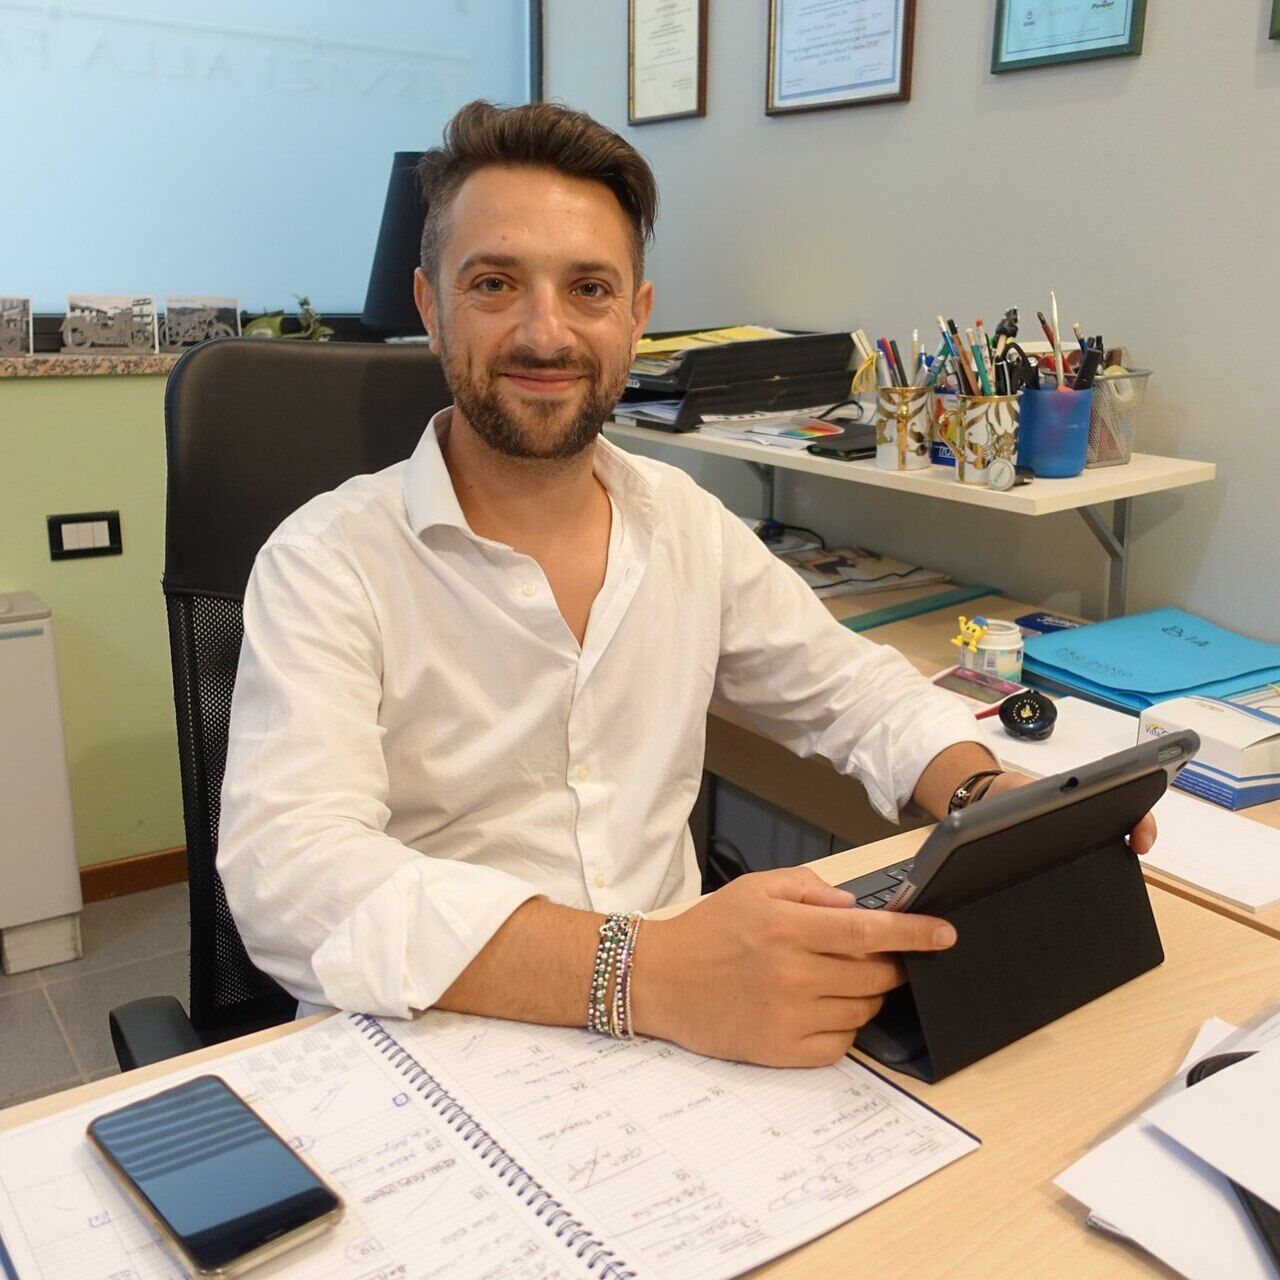 Paolo Lutti: CEO i Servizio Protetto dhe CEO i Prodomo Servizi